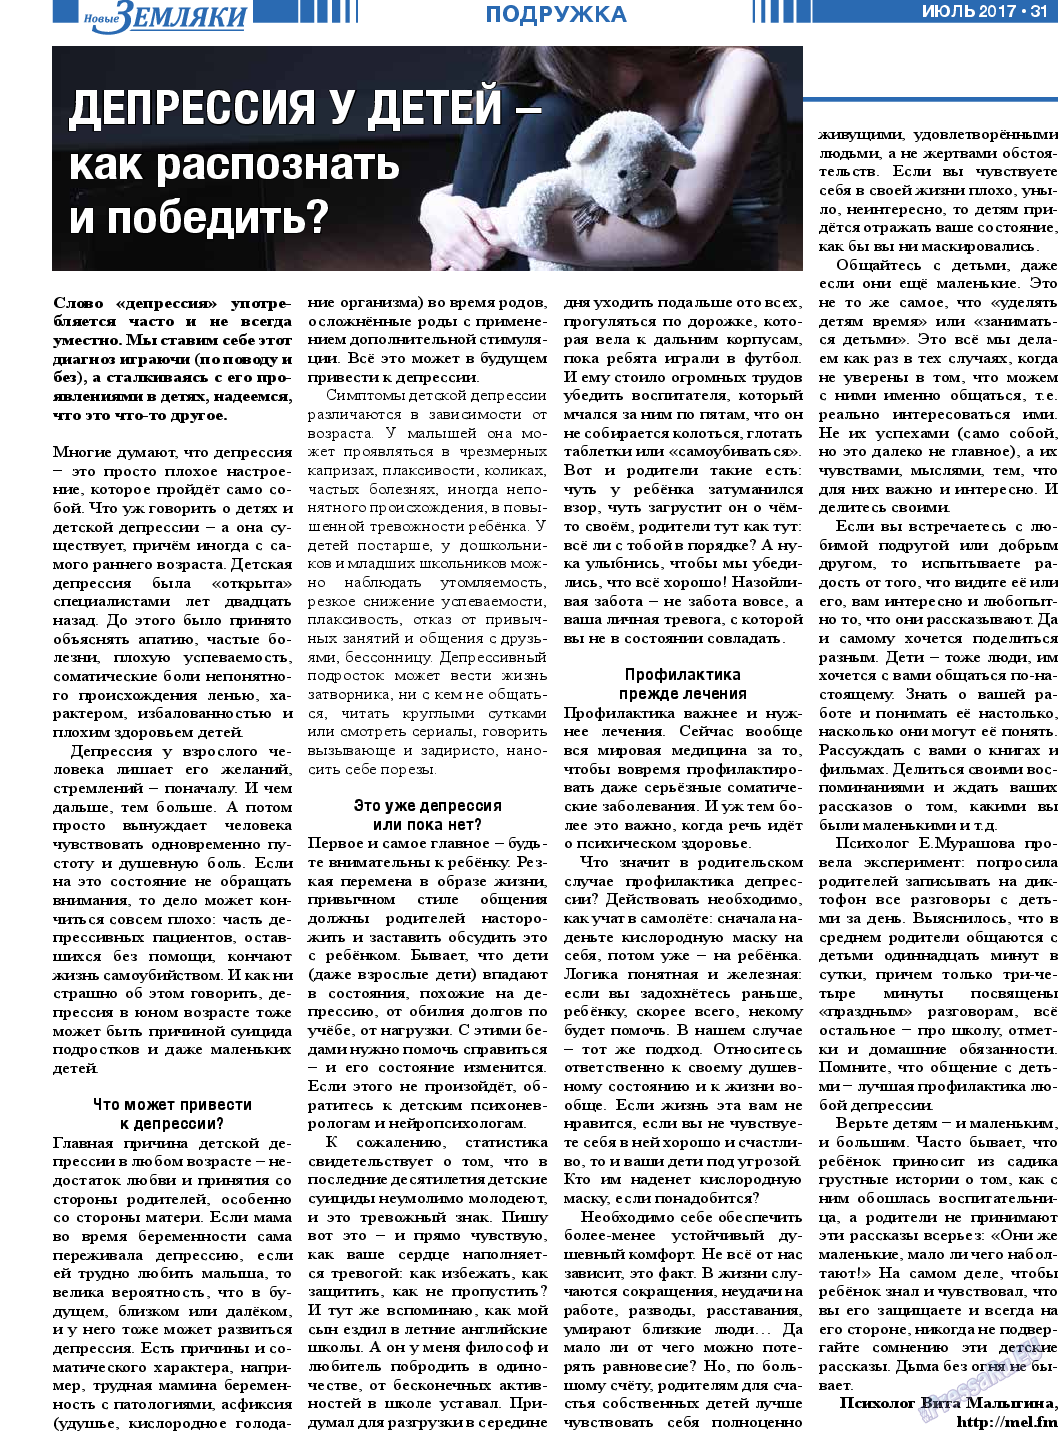 Новые Земляки, газета. 2017 №7 стр.31